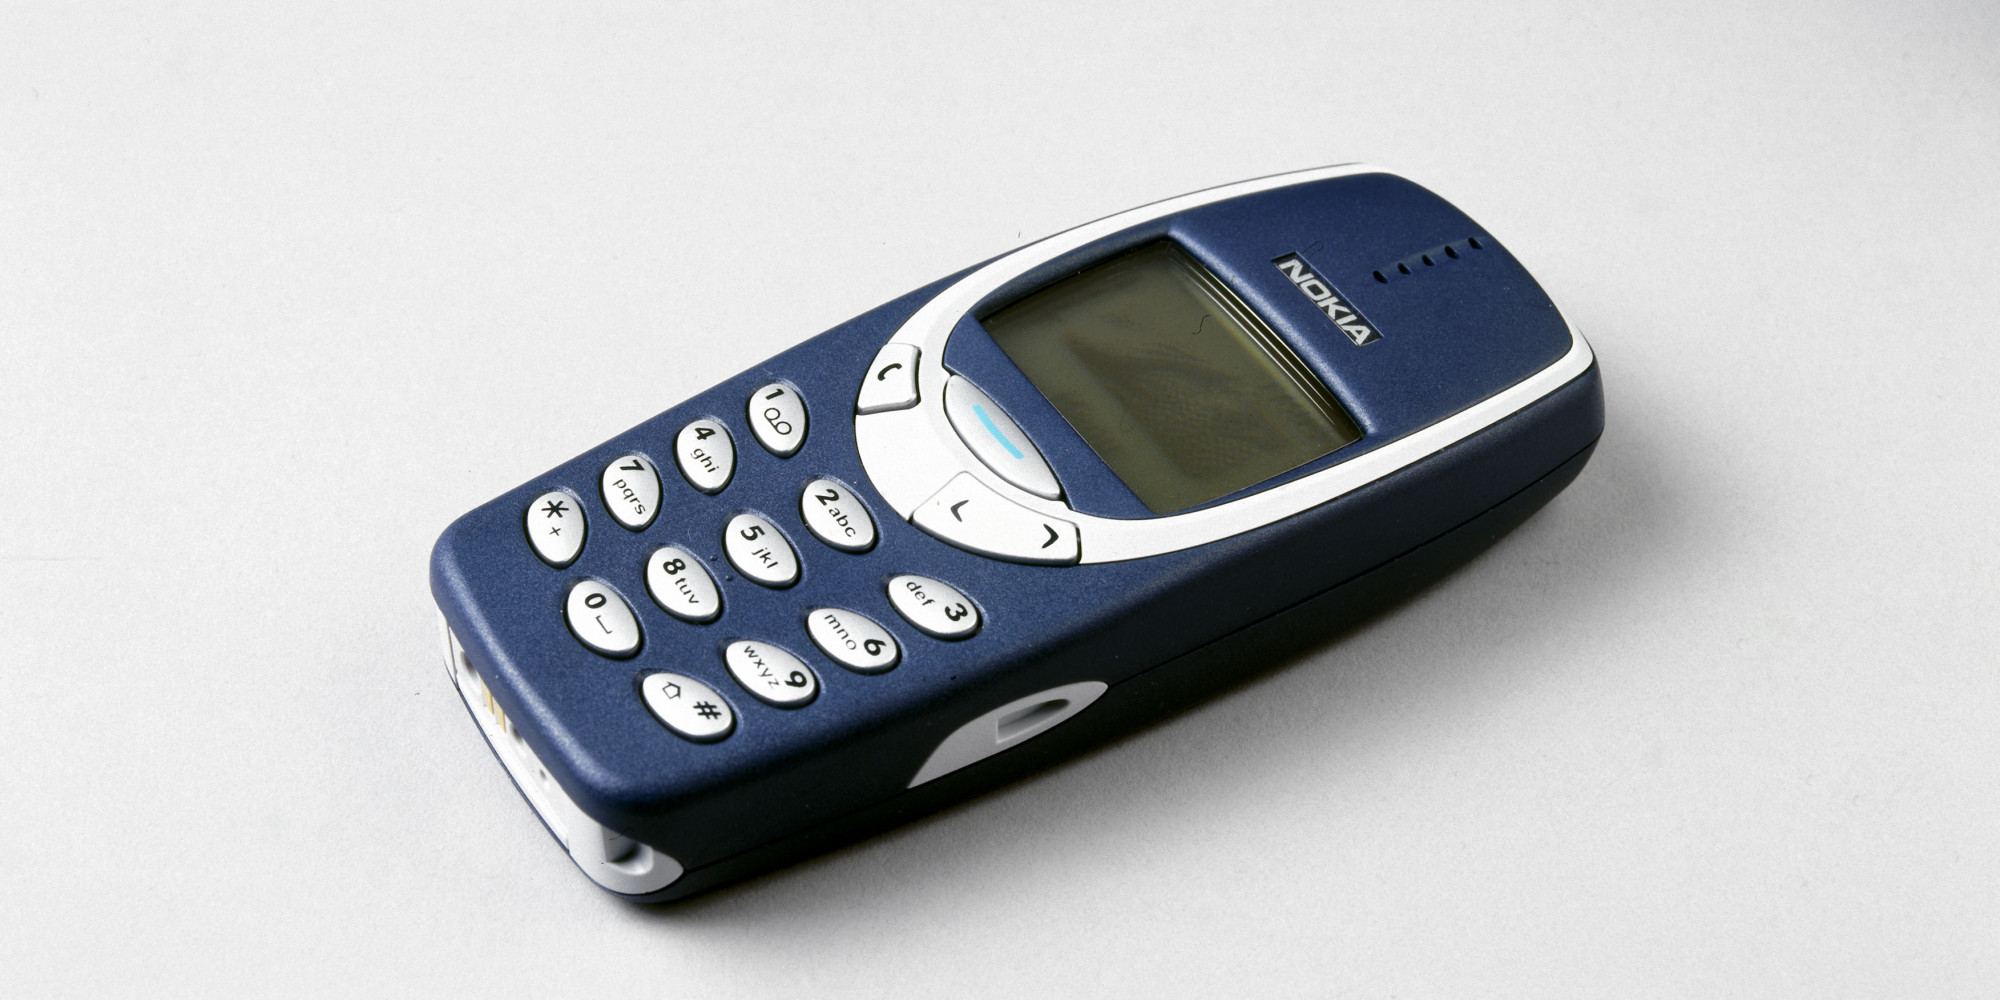 Nokia 3310 keert terug